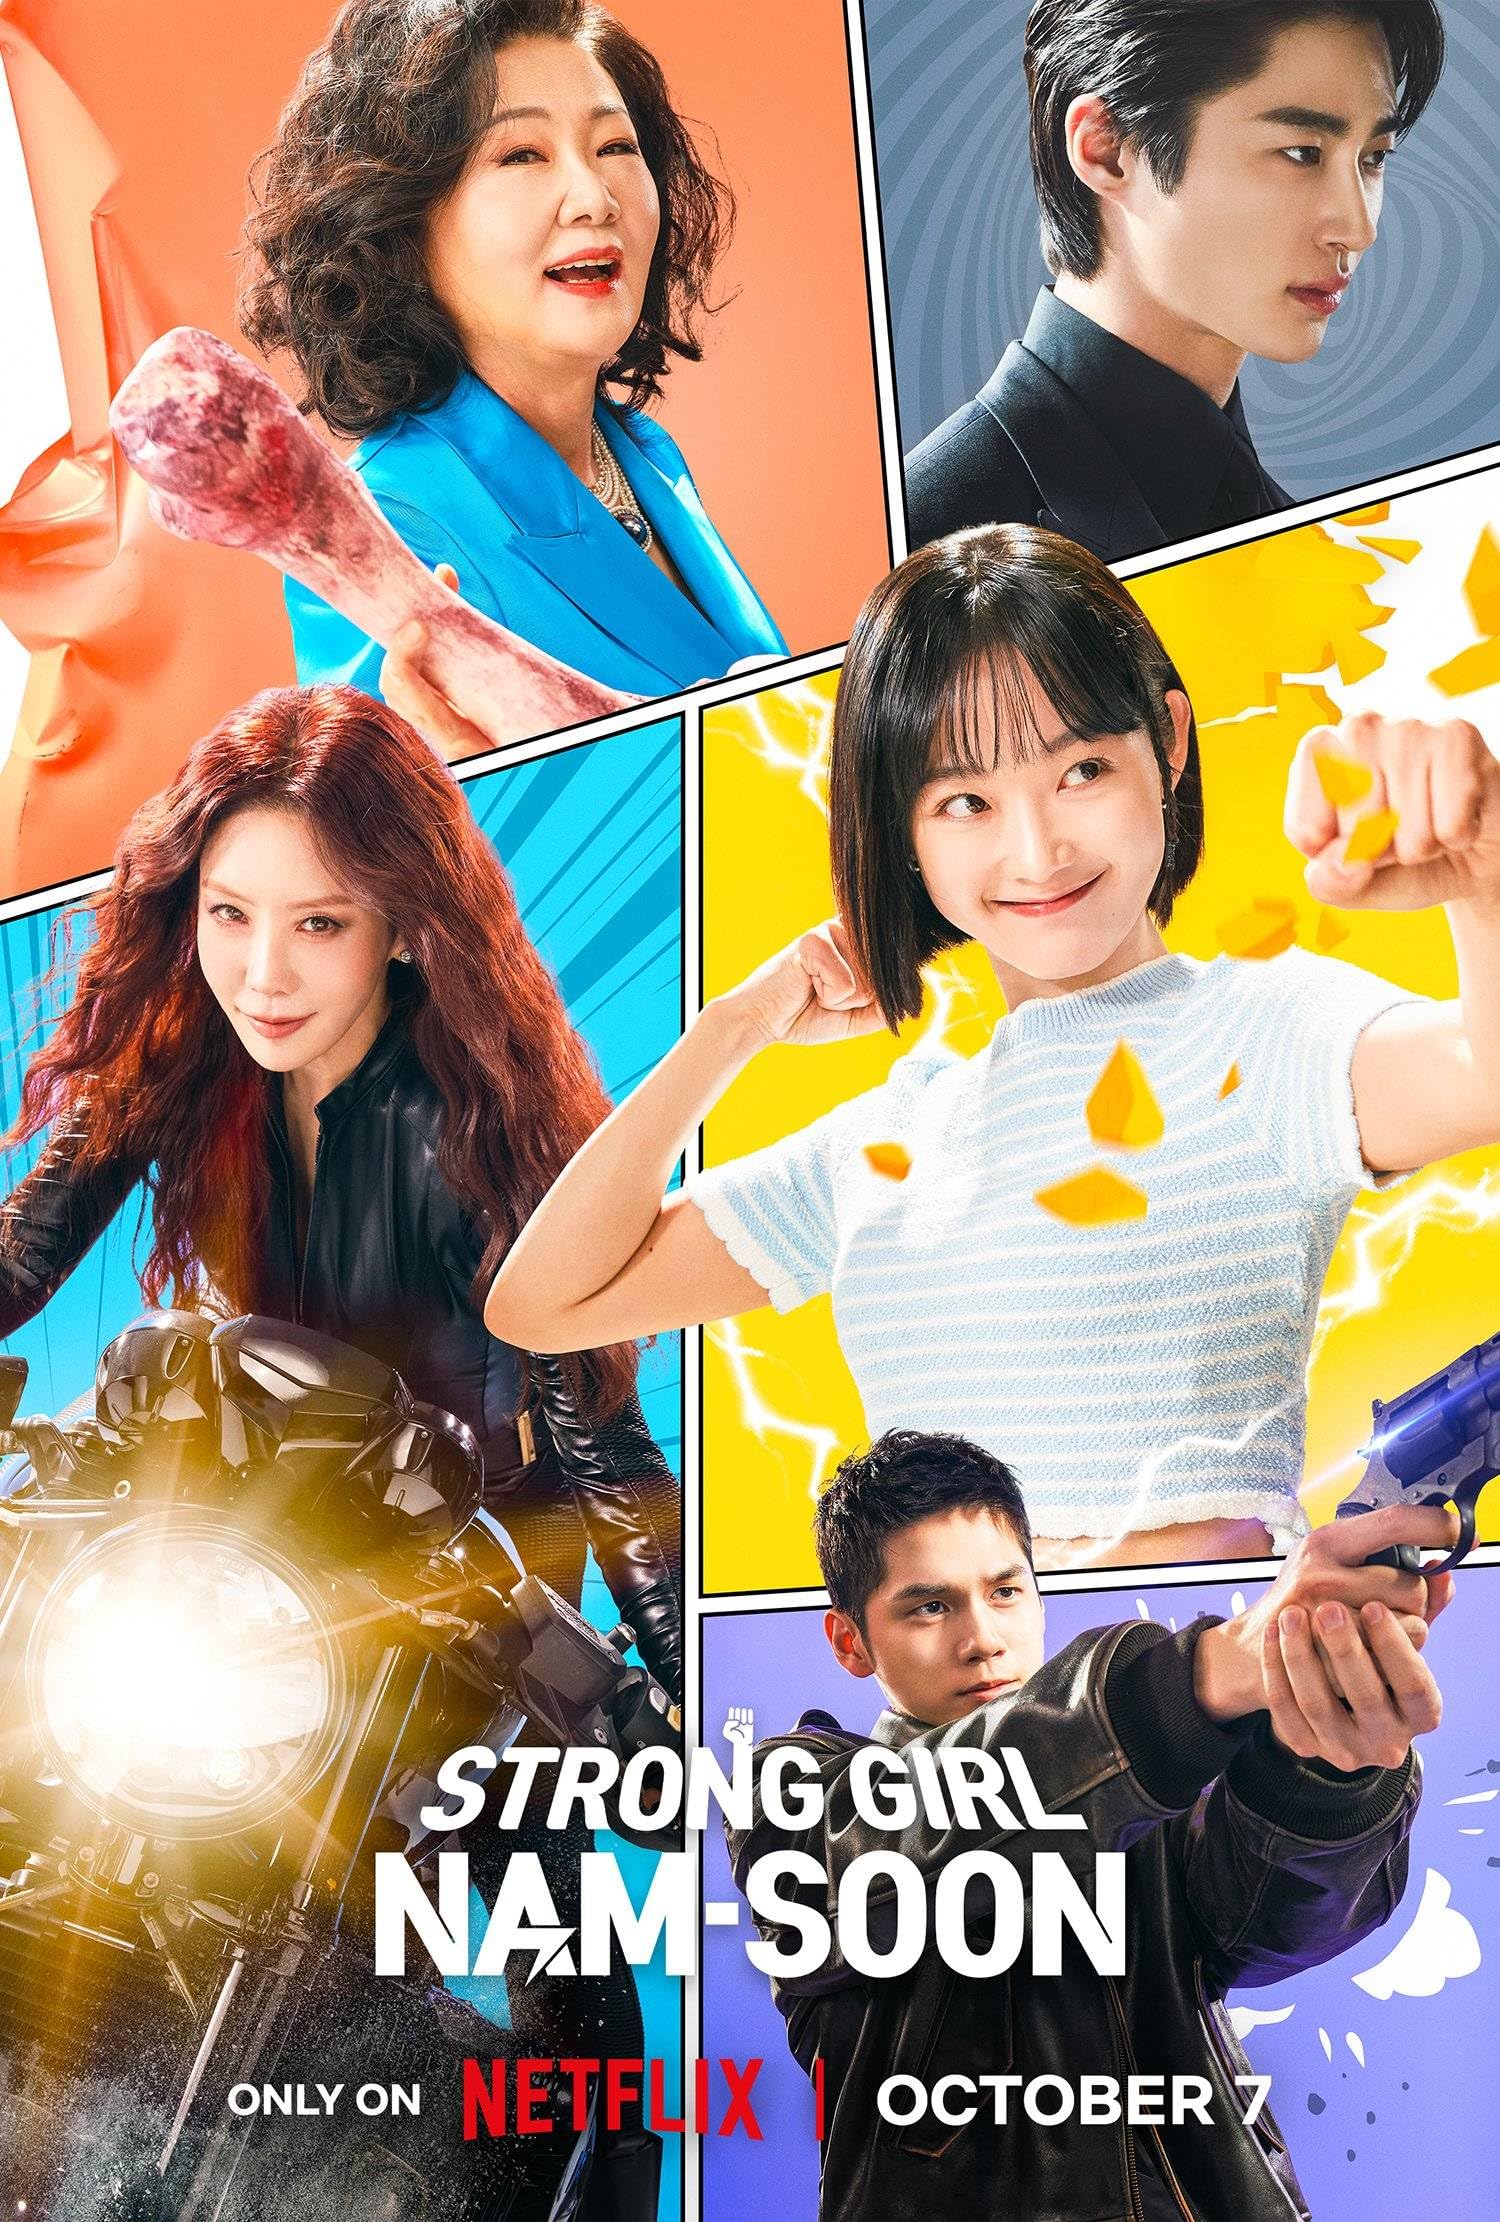 مسلسل الفتاة القوية نام سون Strong Girl Nam-soon الحلقة 2 مترجمة